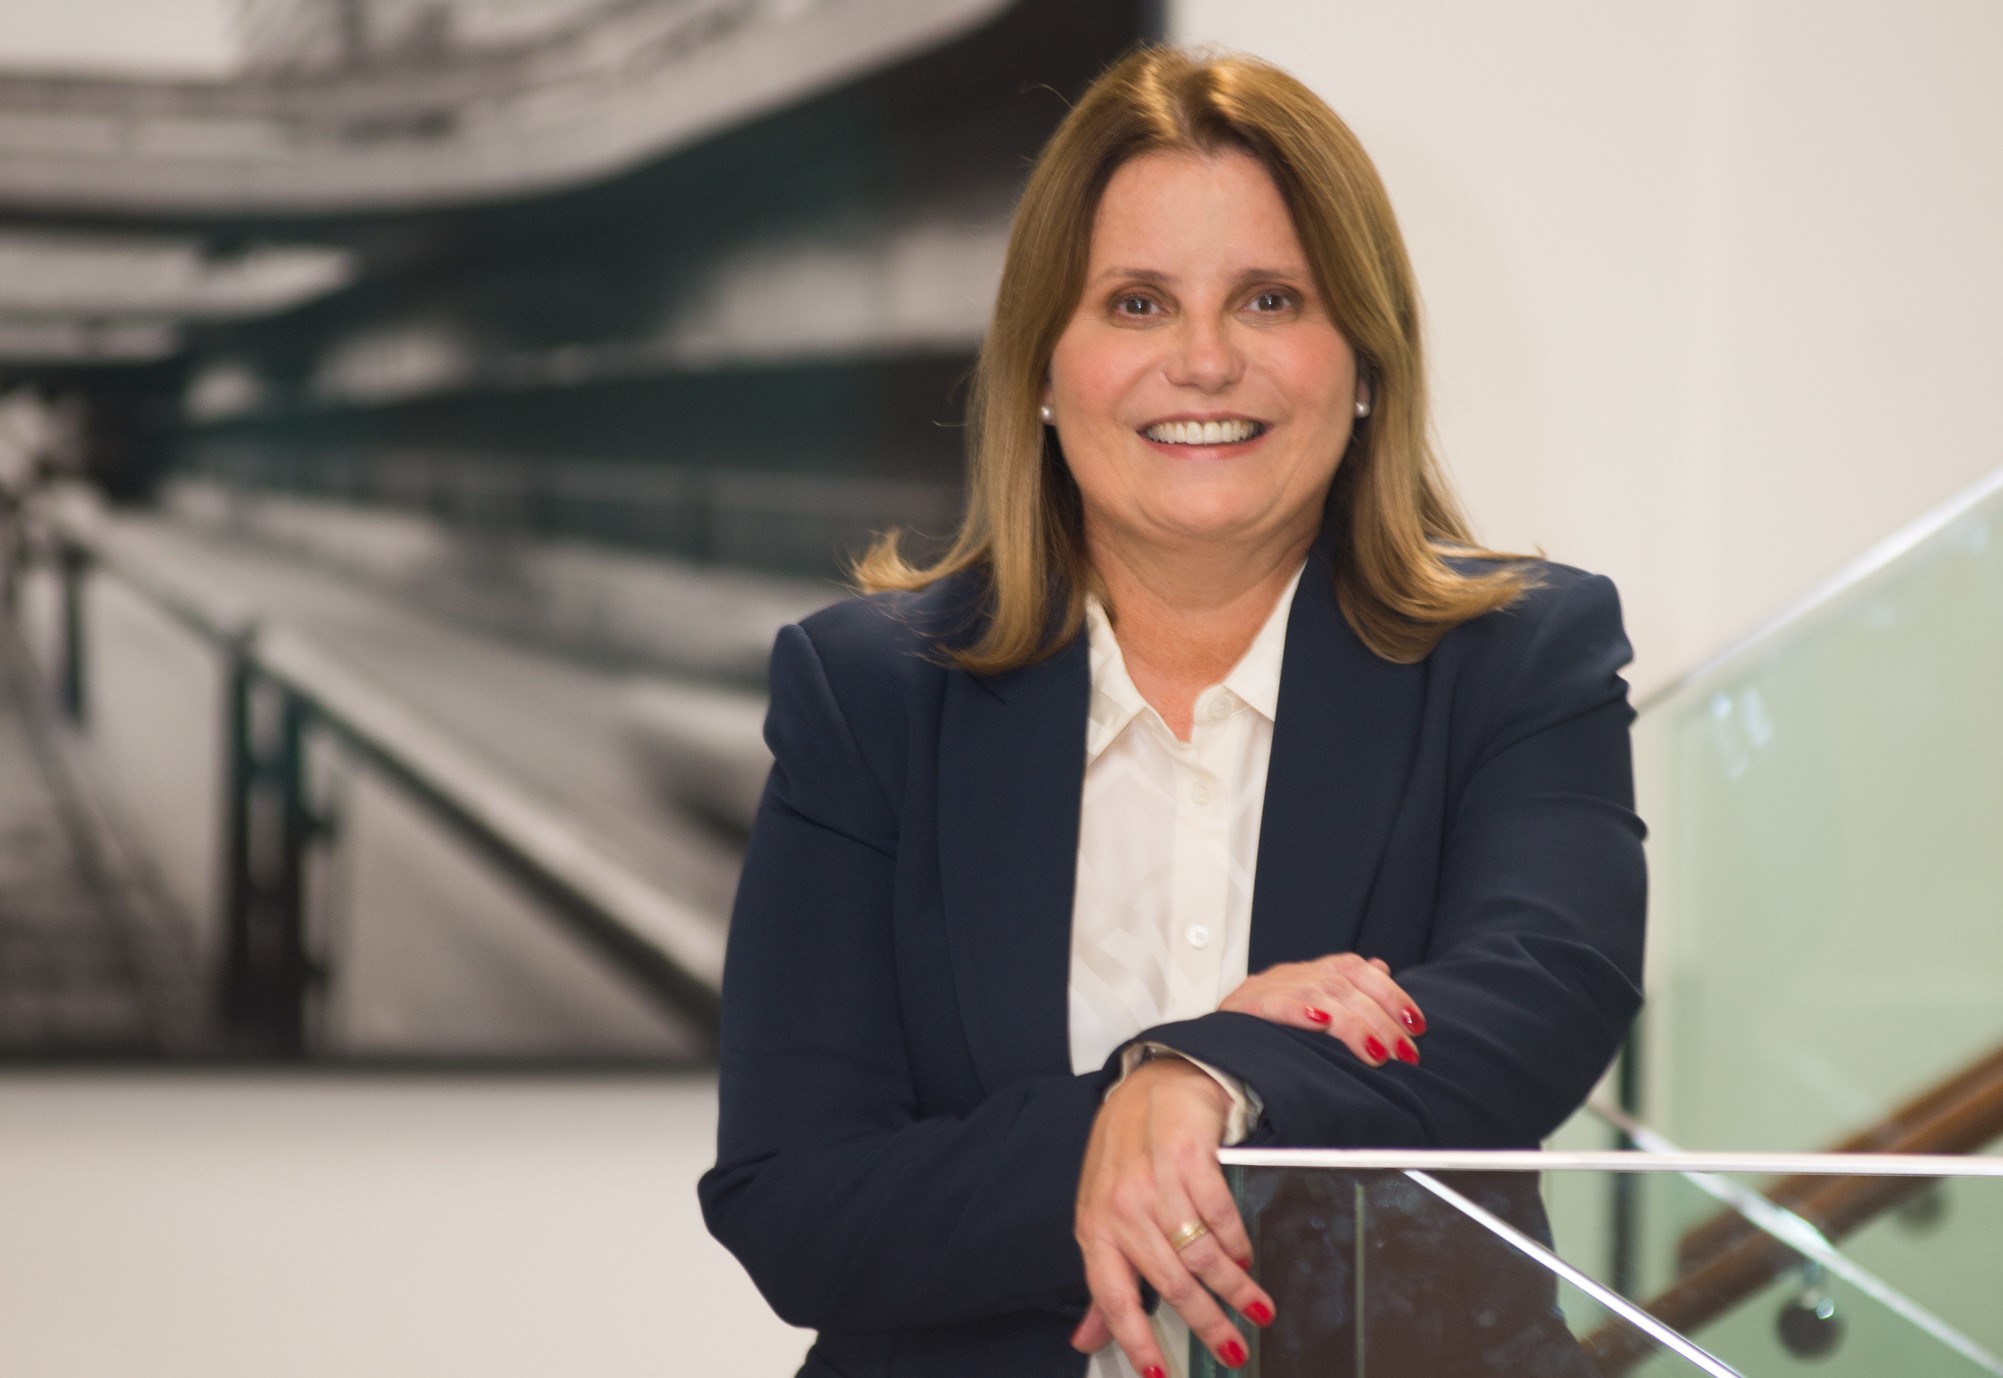 Silene Chiconini asume como directora de Asuntos Corporativos y Sustentabilidad de Volkswagen para la Región Sudamérica